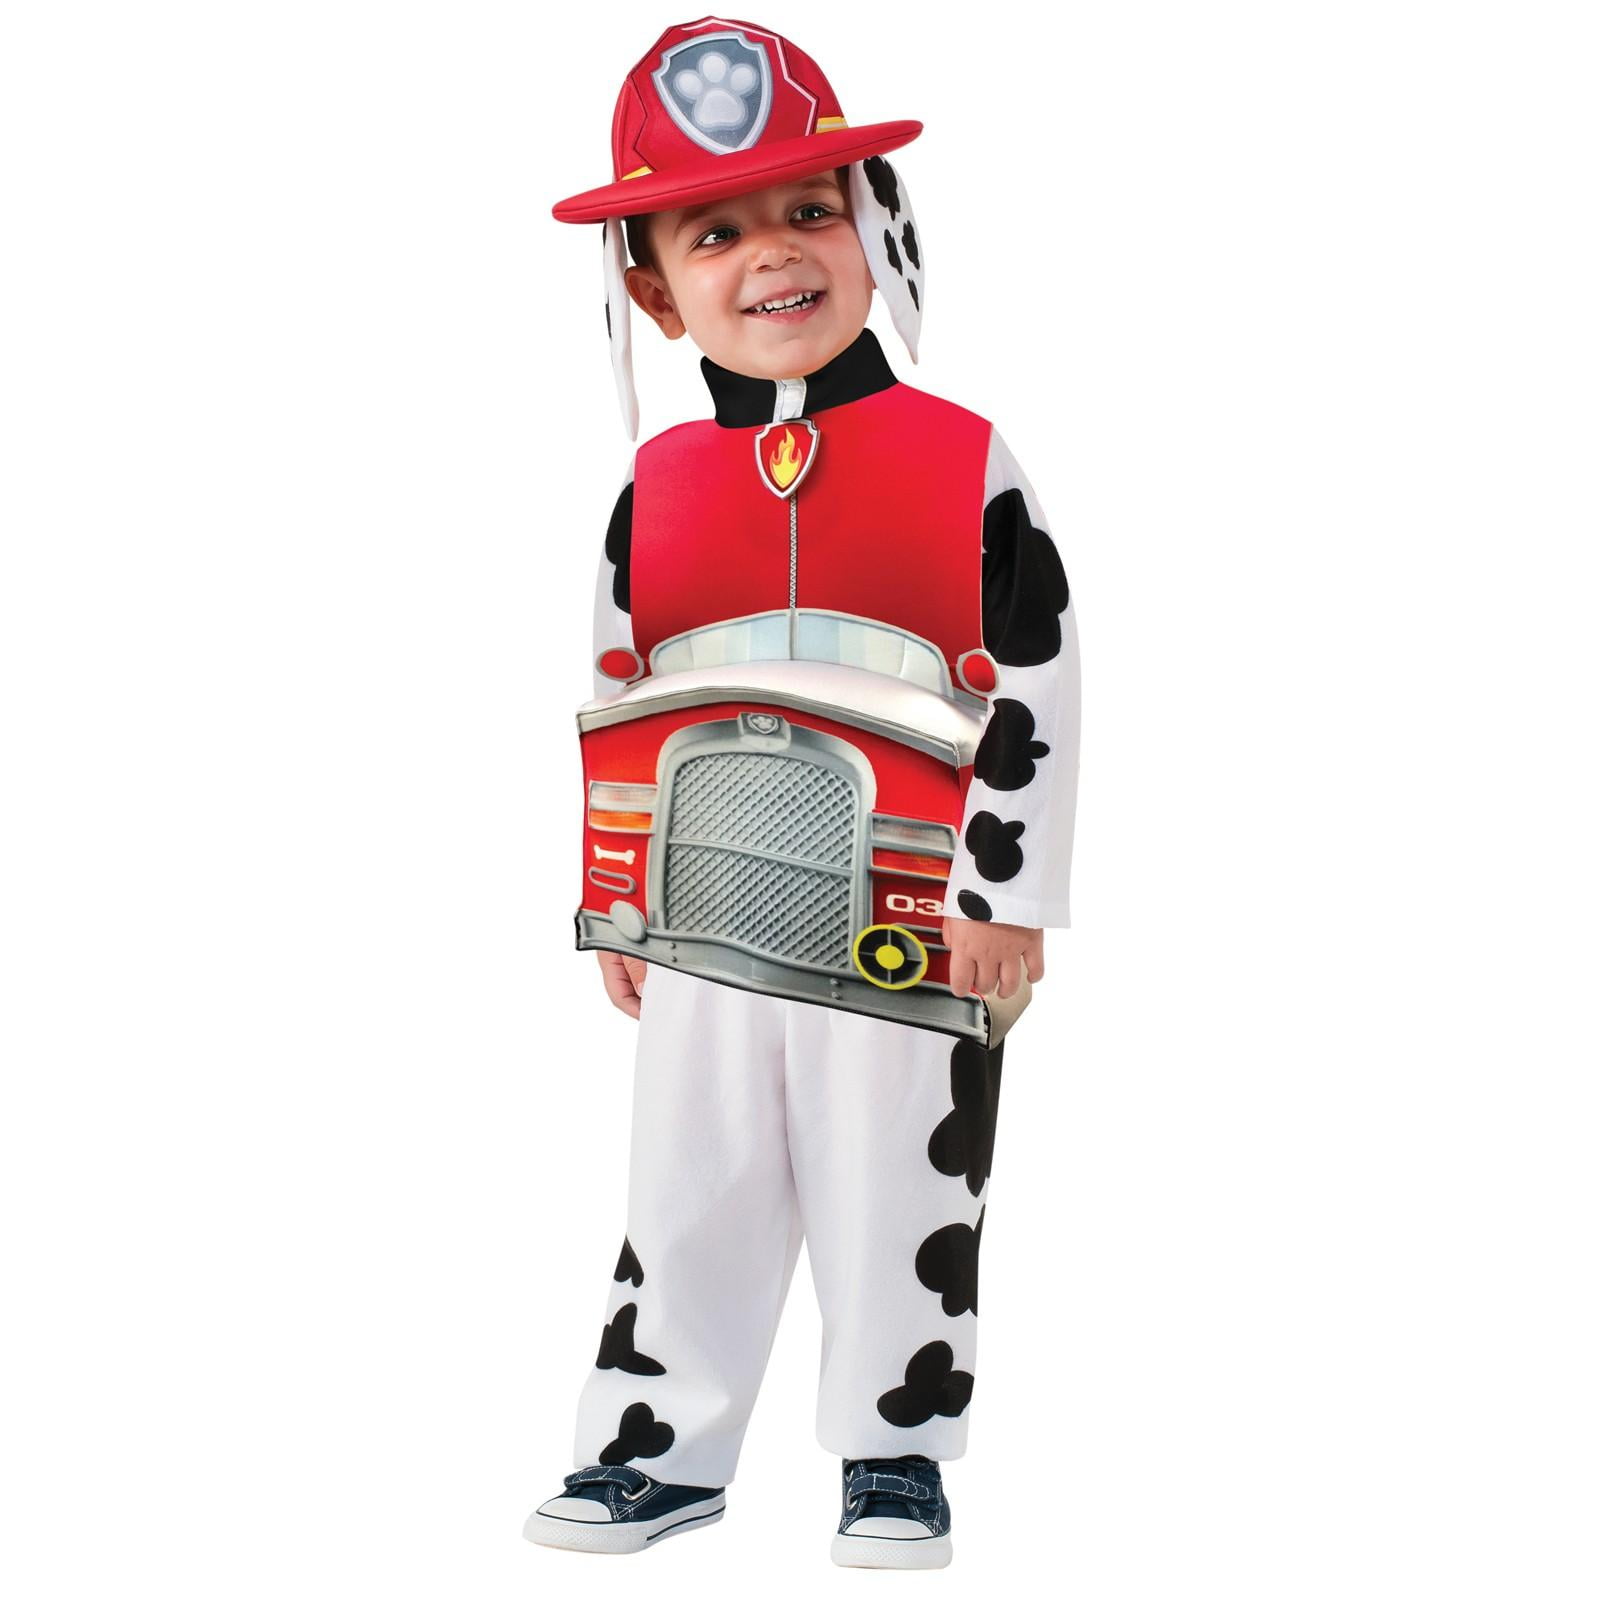 Højttaler moronic velfærd Paw Patrol Marshall Deluxe Toddler Costume - (2T-4T) - Walmart.com